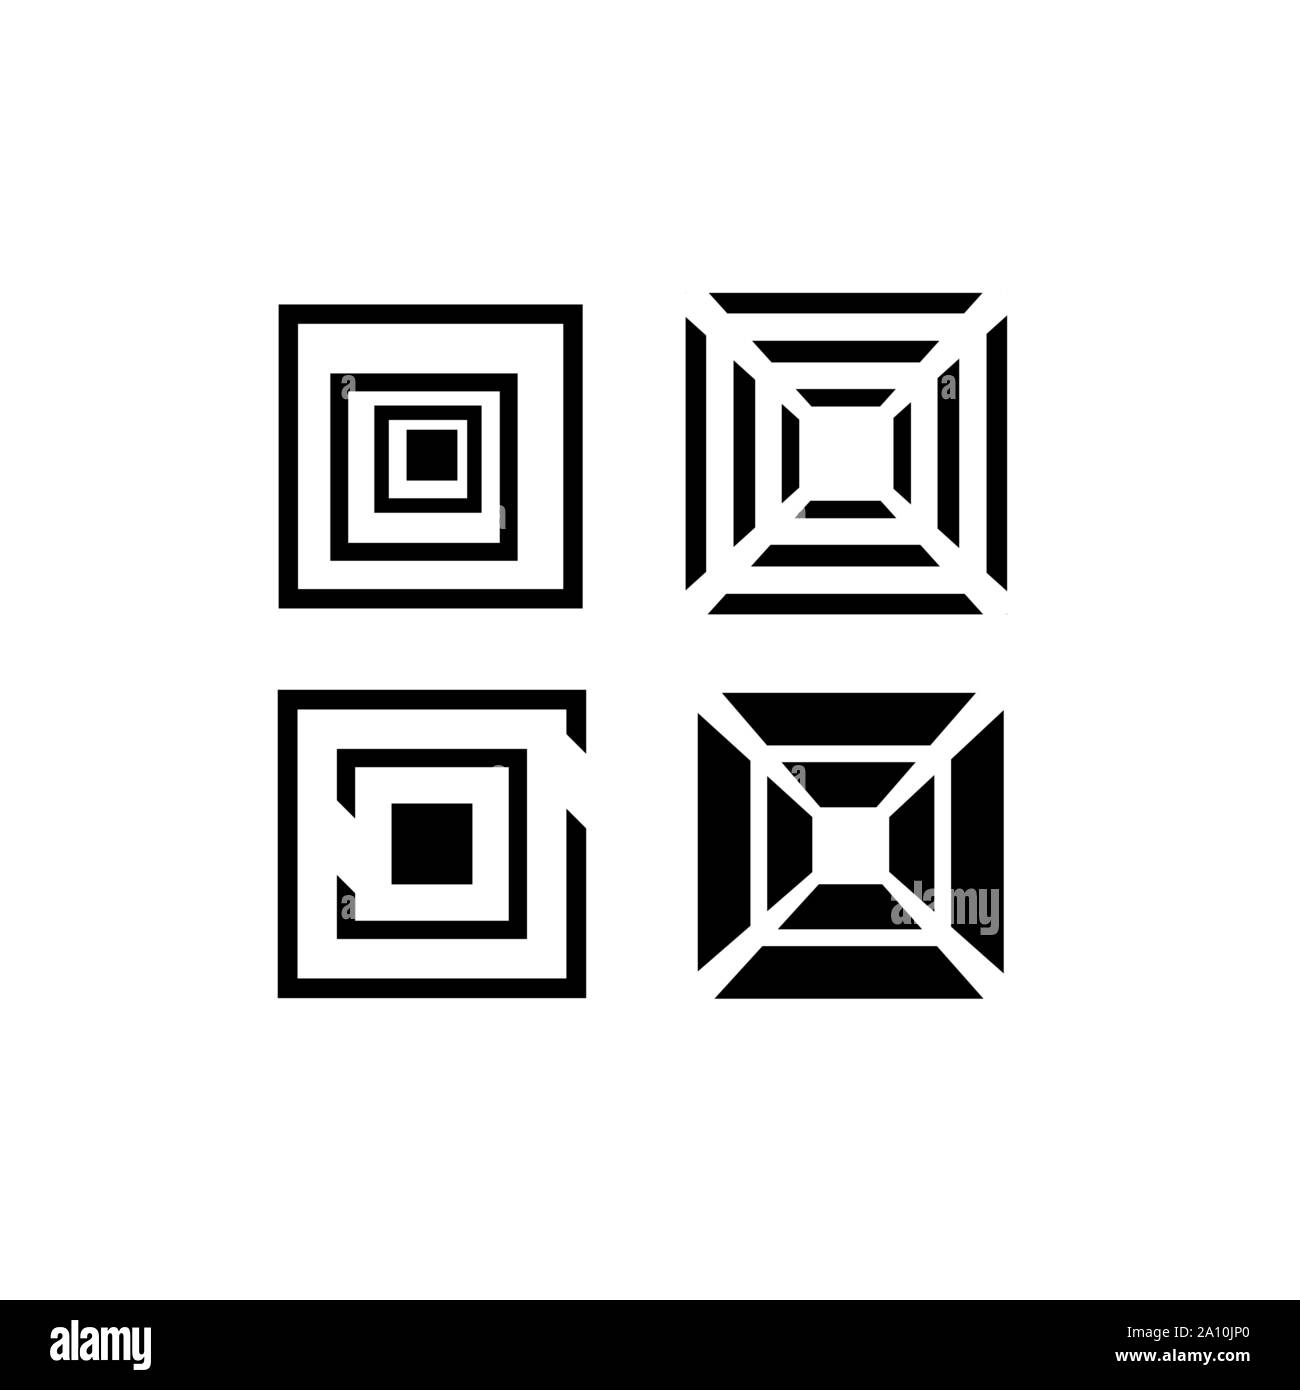 Abstract forma geometrica impilati forma quadrata logo elemento di design Illustrazione Vettoriale